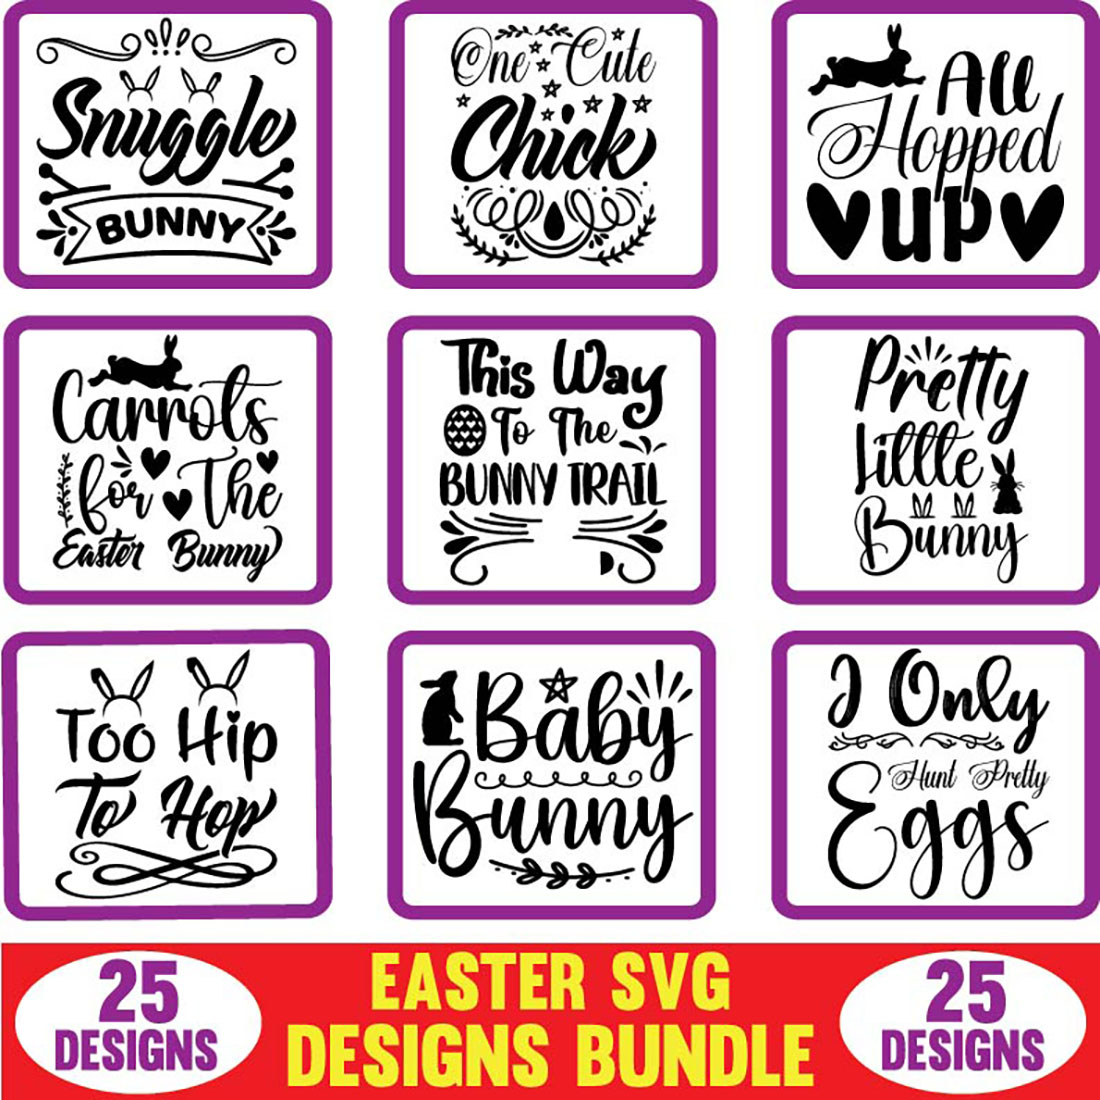 Easter SVG Designs Bundle cover image.